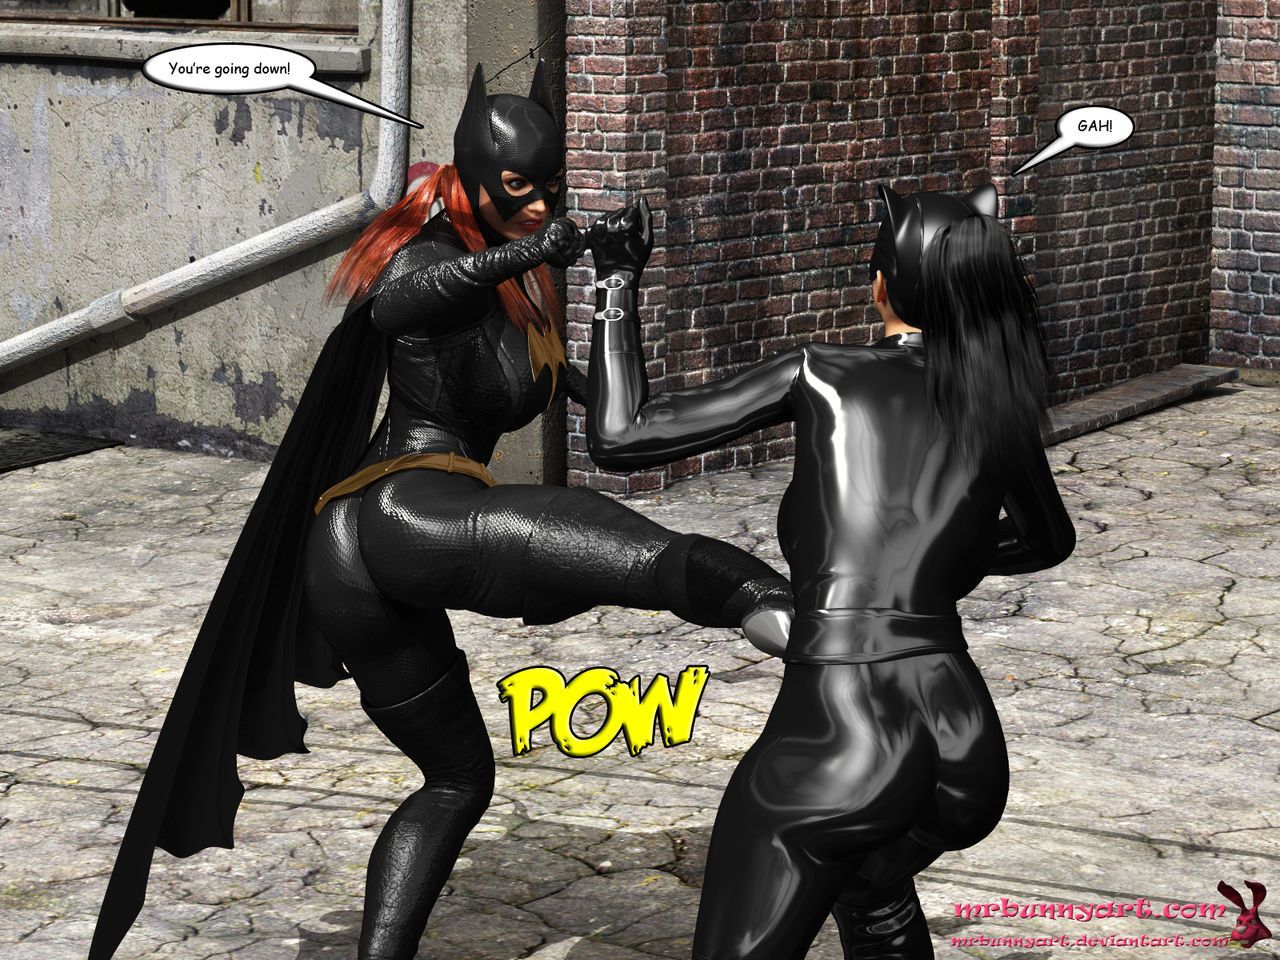 batgirl vs Caim